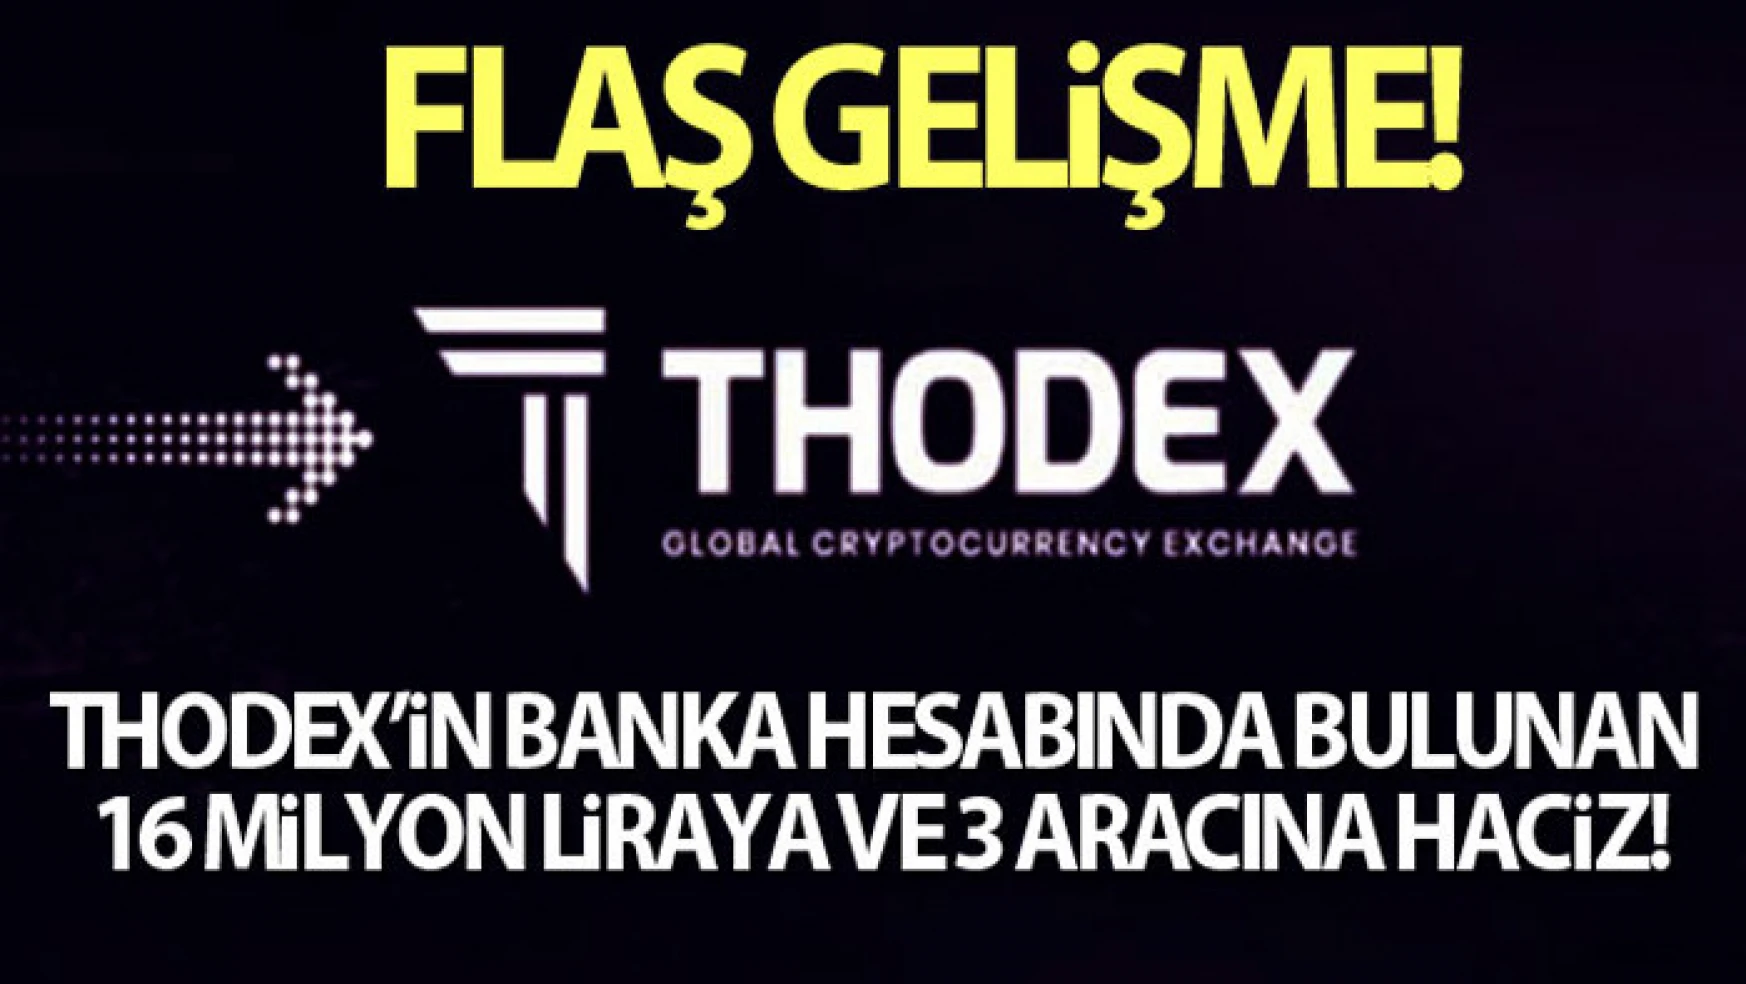 Thodex'in banka hesabında bulunan 16 milyon lira paraya ve 3 aracına haciz konuldu